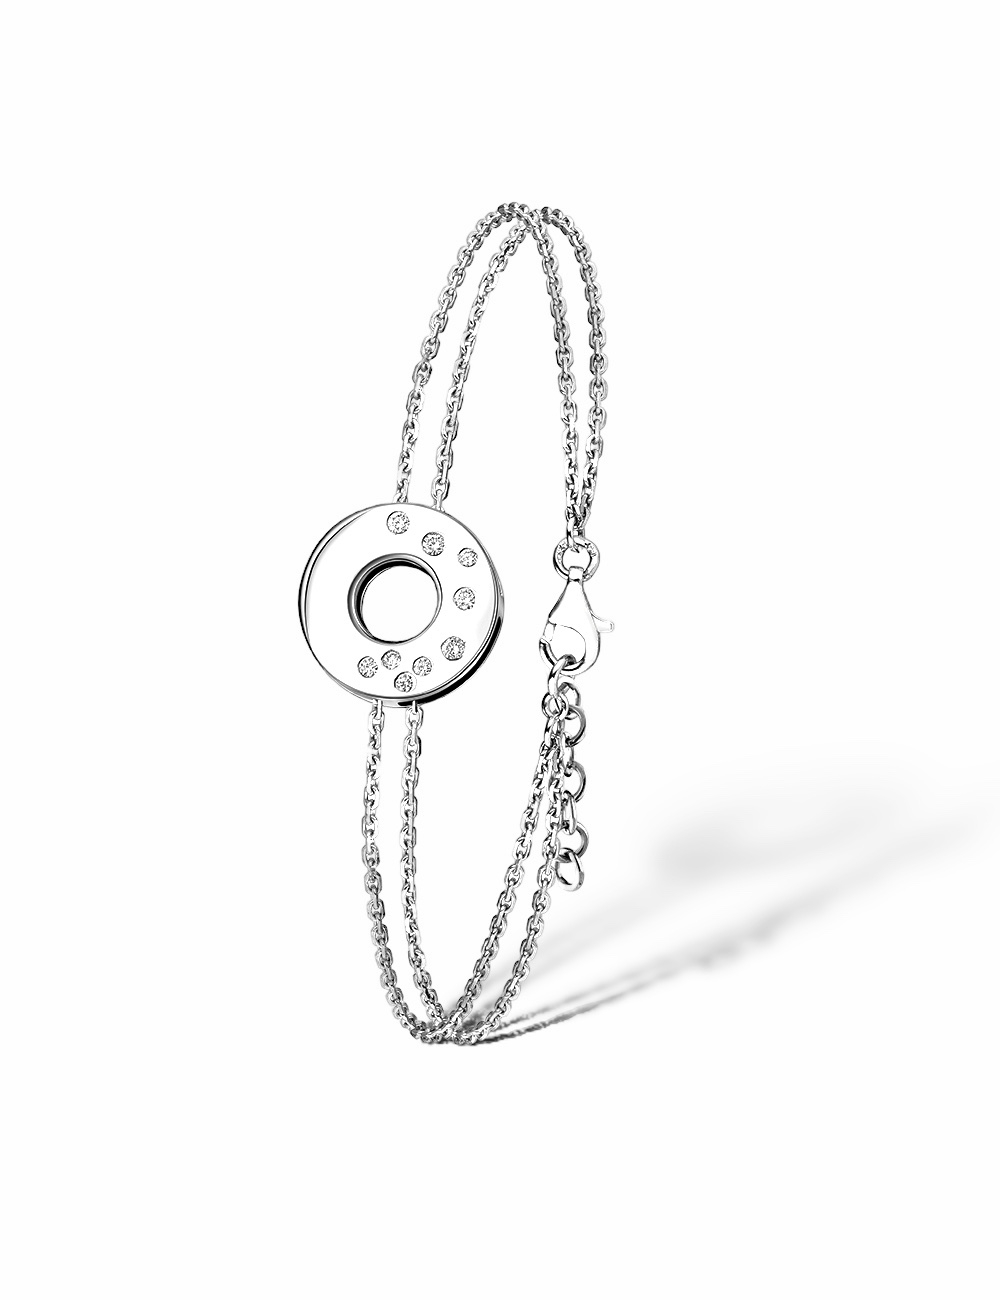 ChatGPT
Un bracelet féminin en or blanc formant un cercle, orné d'une série de diamants blancs disposés en cascade.